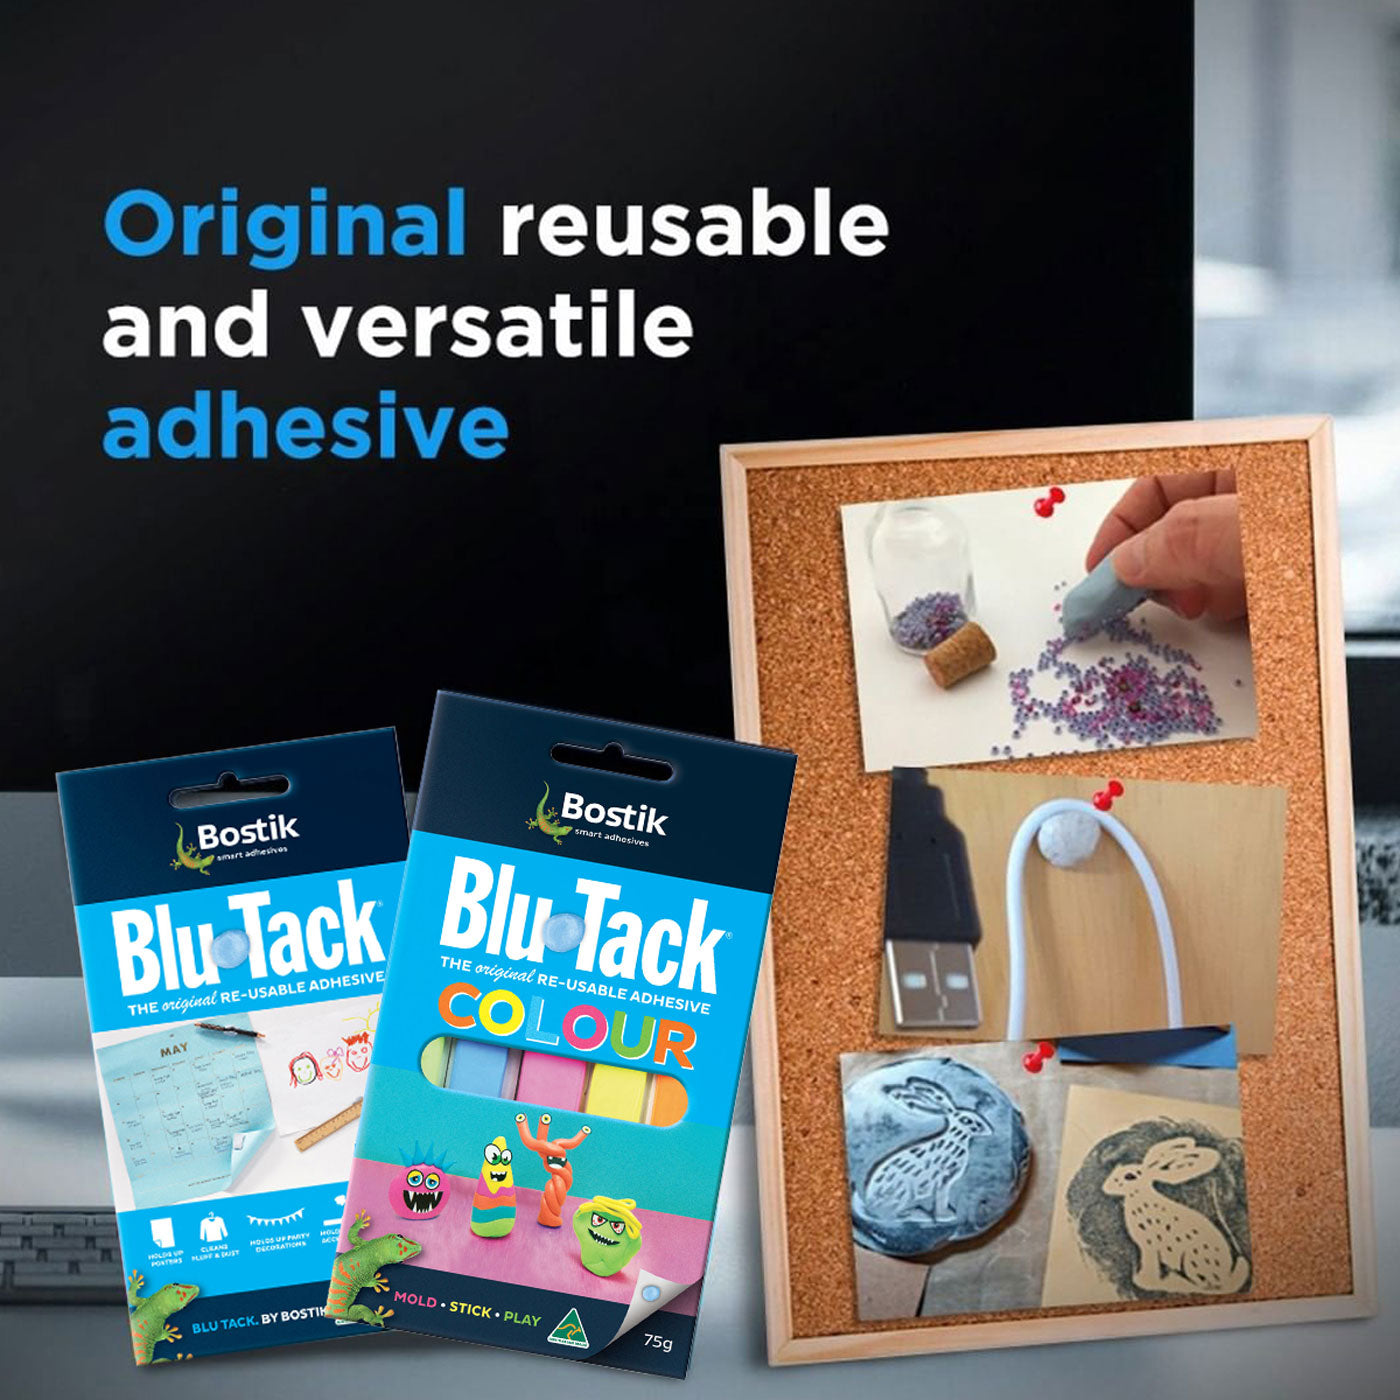 Bostik Blu-Tack Reusable Adhesive Original 75gm